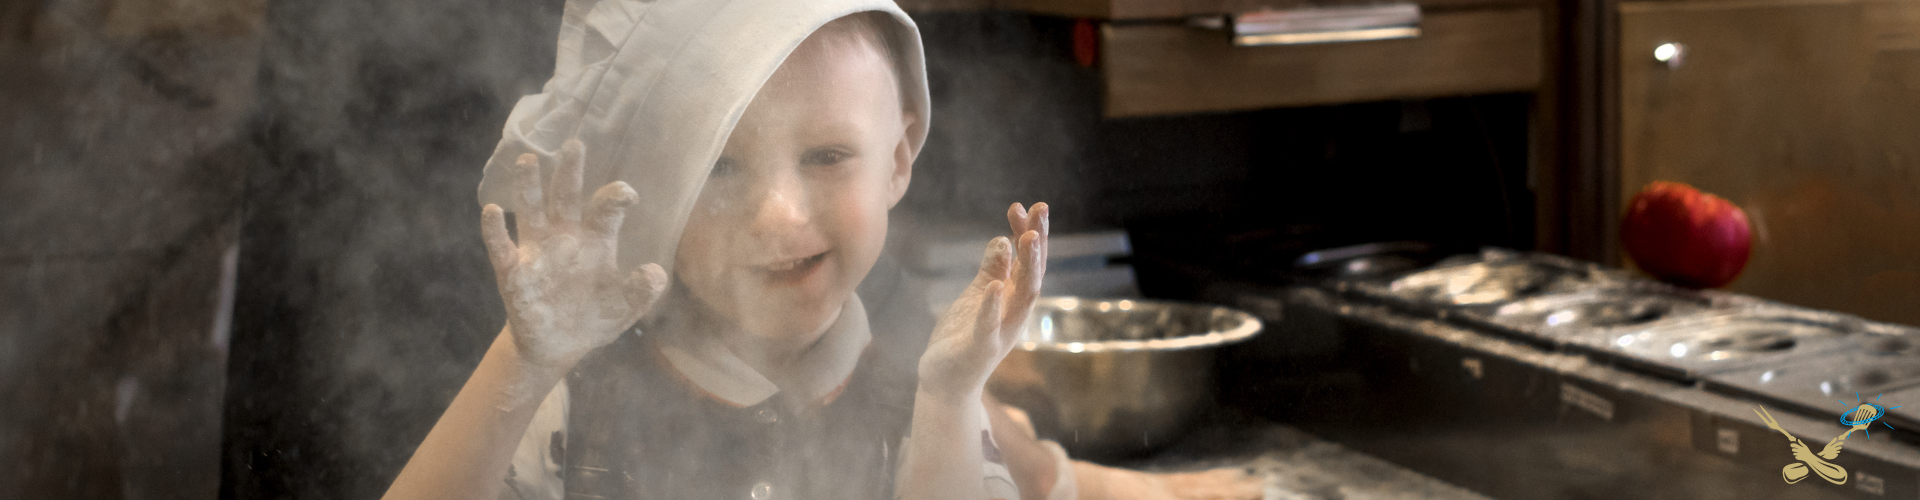 Kookcollege voor kinderen Koken met Engelen